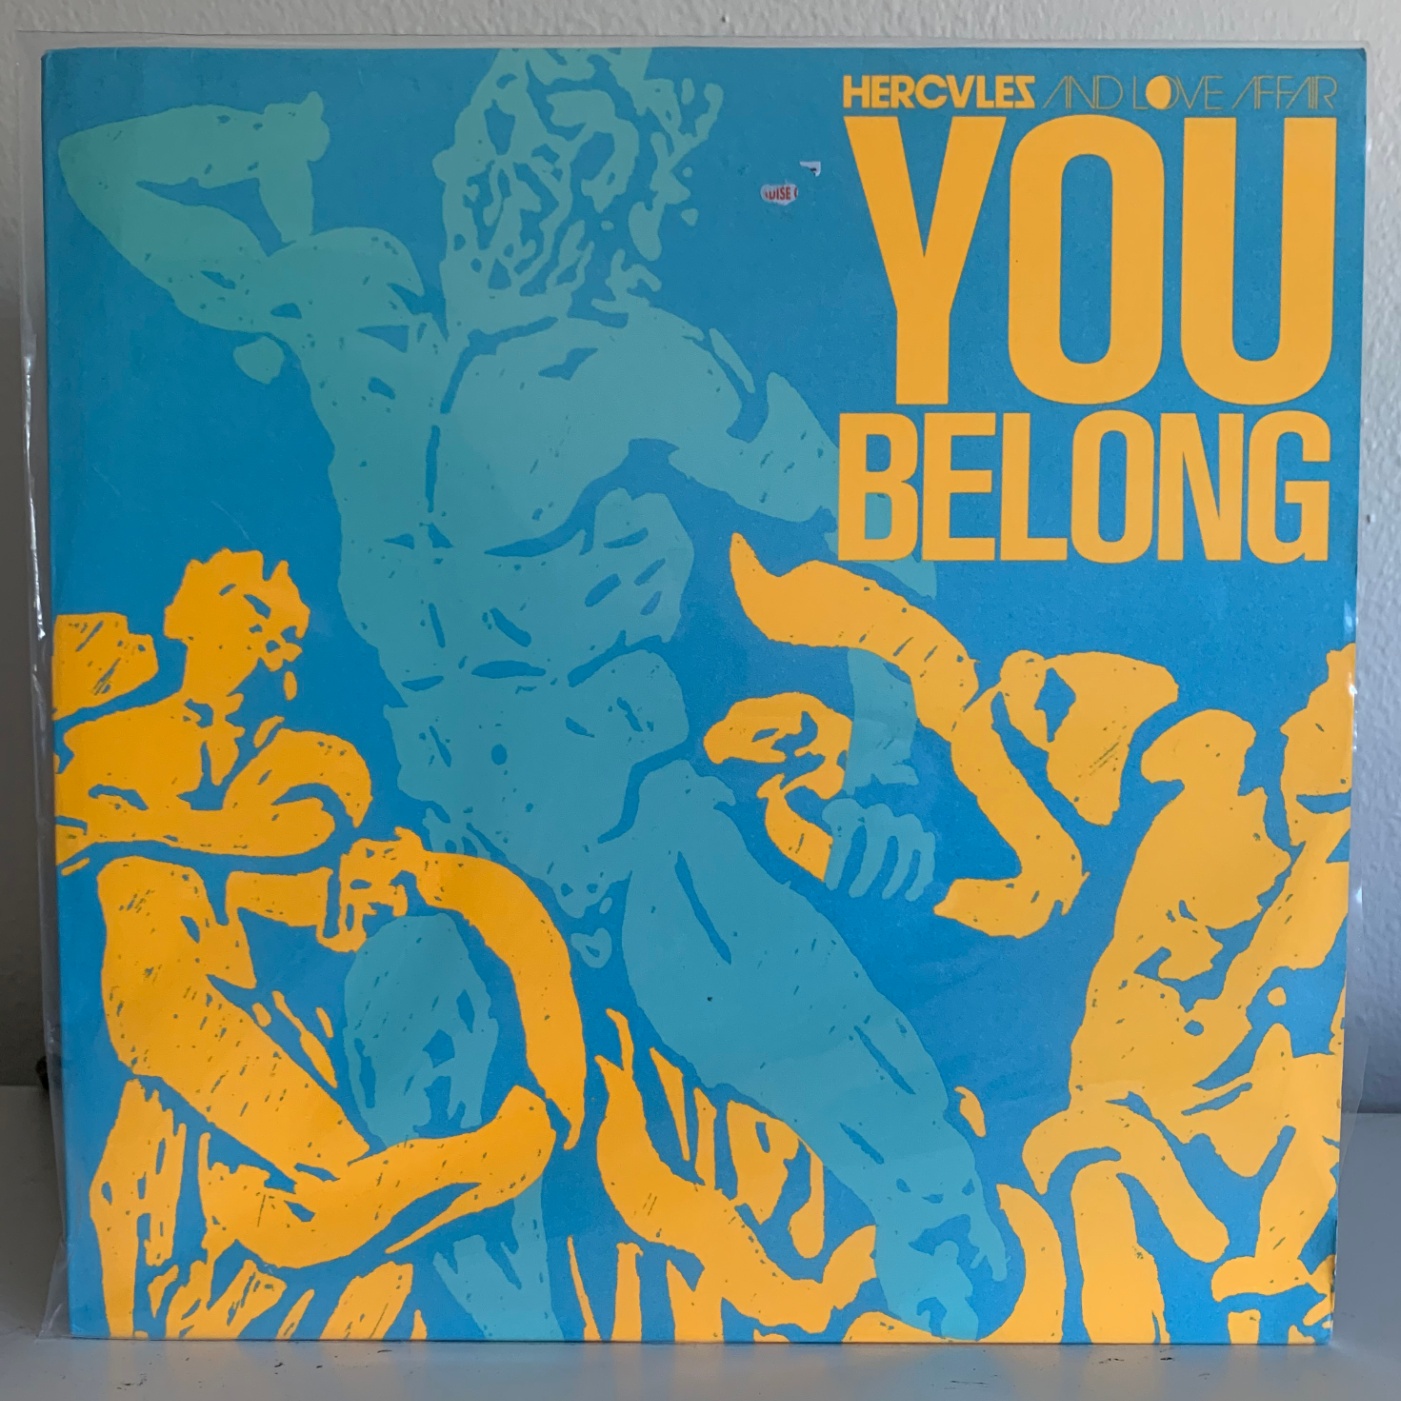 Hercules and Love Affair - "You Belong" vinyl LP